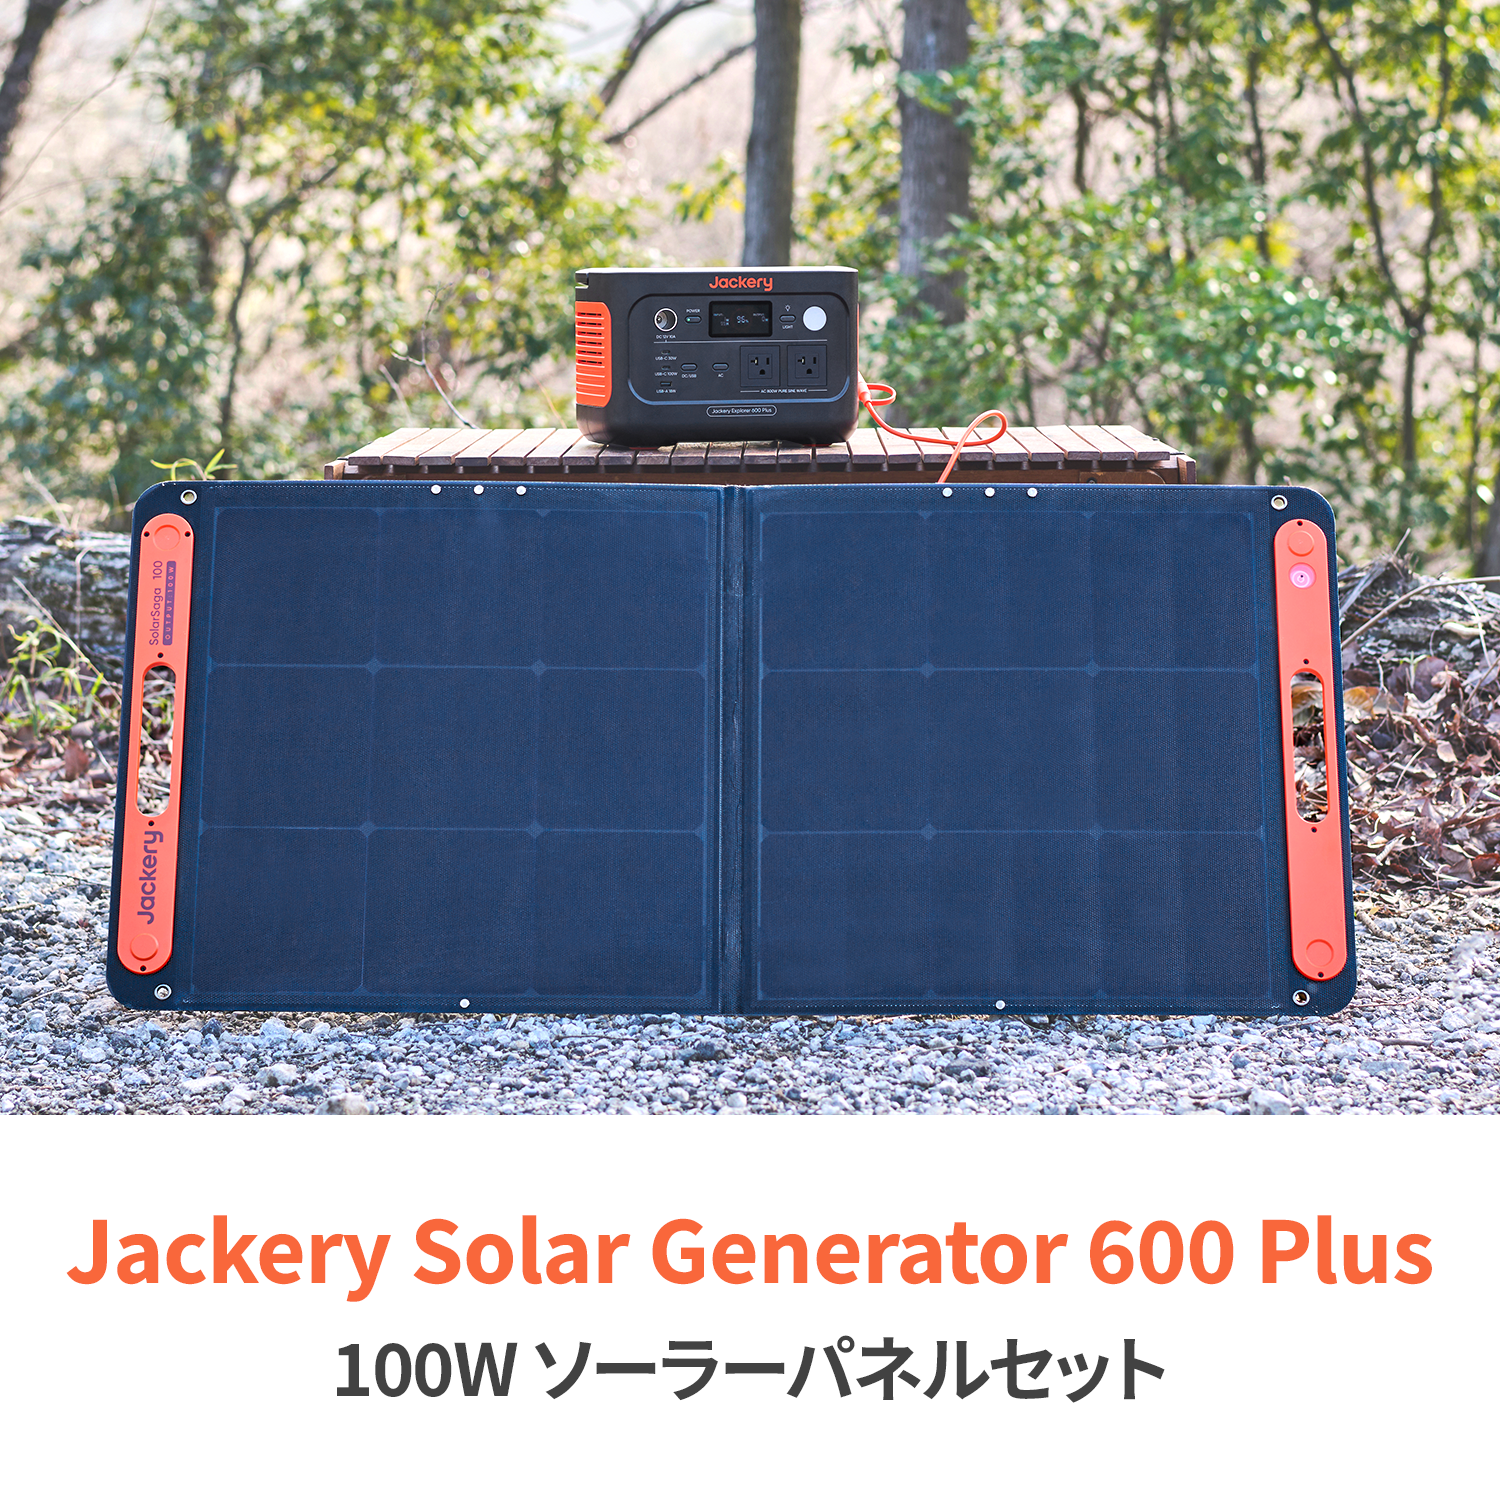 Jackery Solar Generator 600 Plus 100W ポータブル電源 ソーラーパネル セット